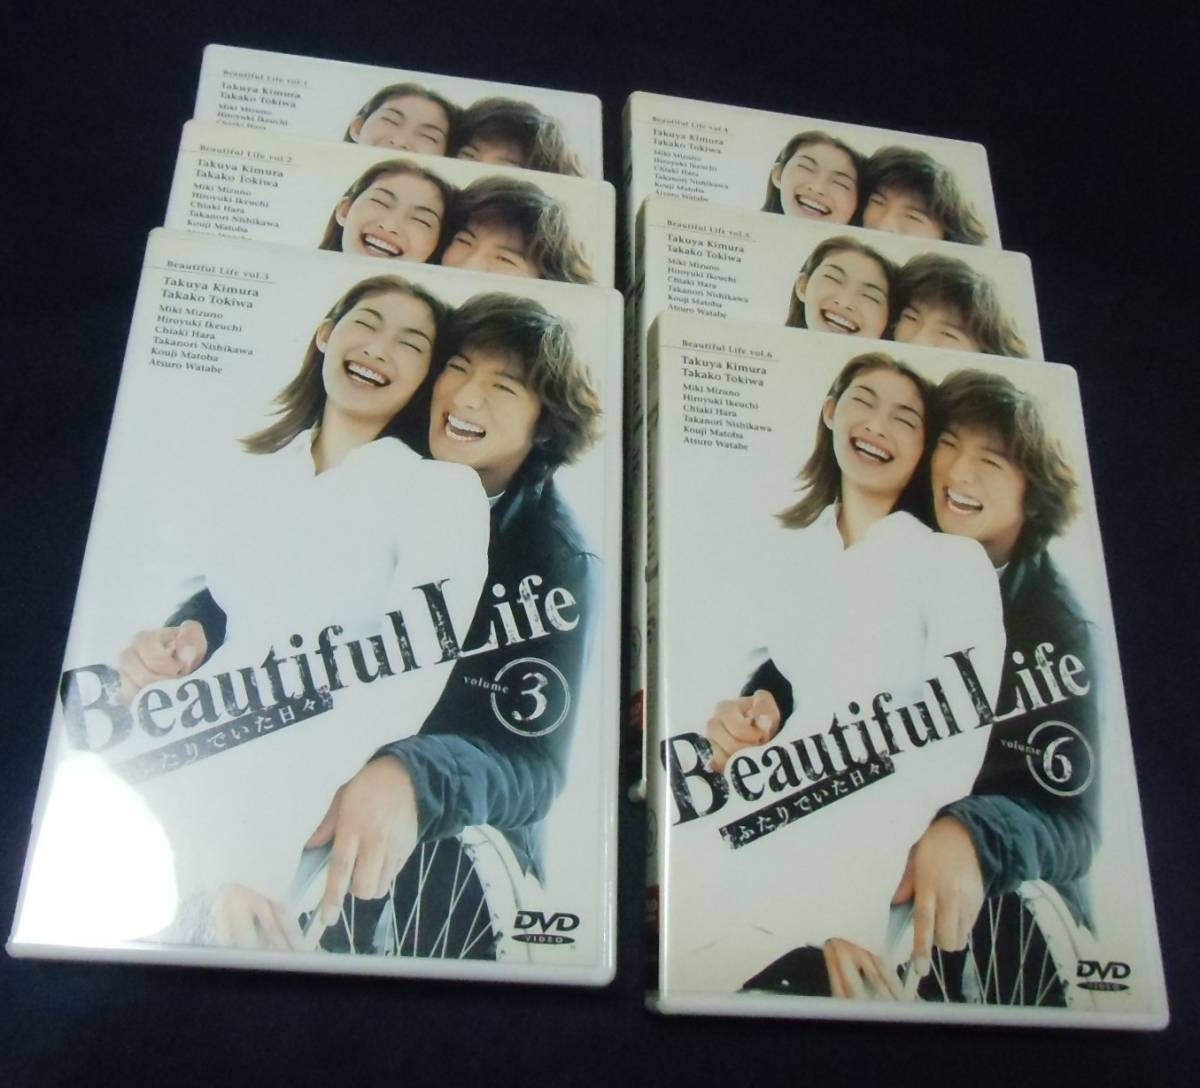 Beautiful Life ビューティフルライフふたりでいた日々 全6巻DVD